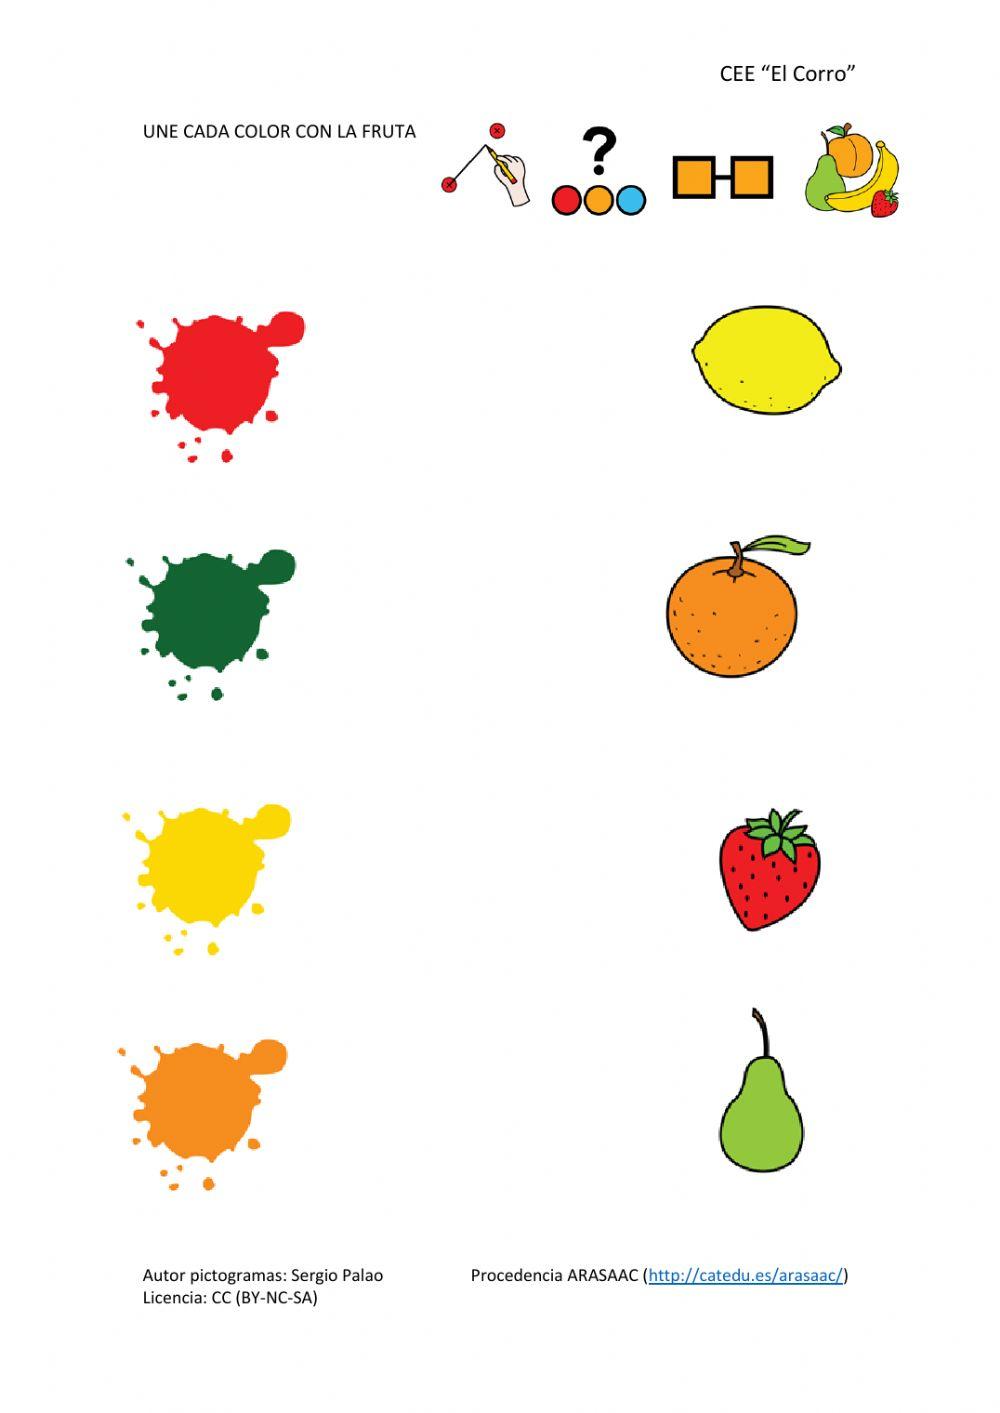 Une cada color con su fruta